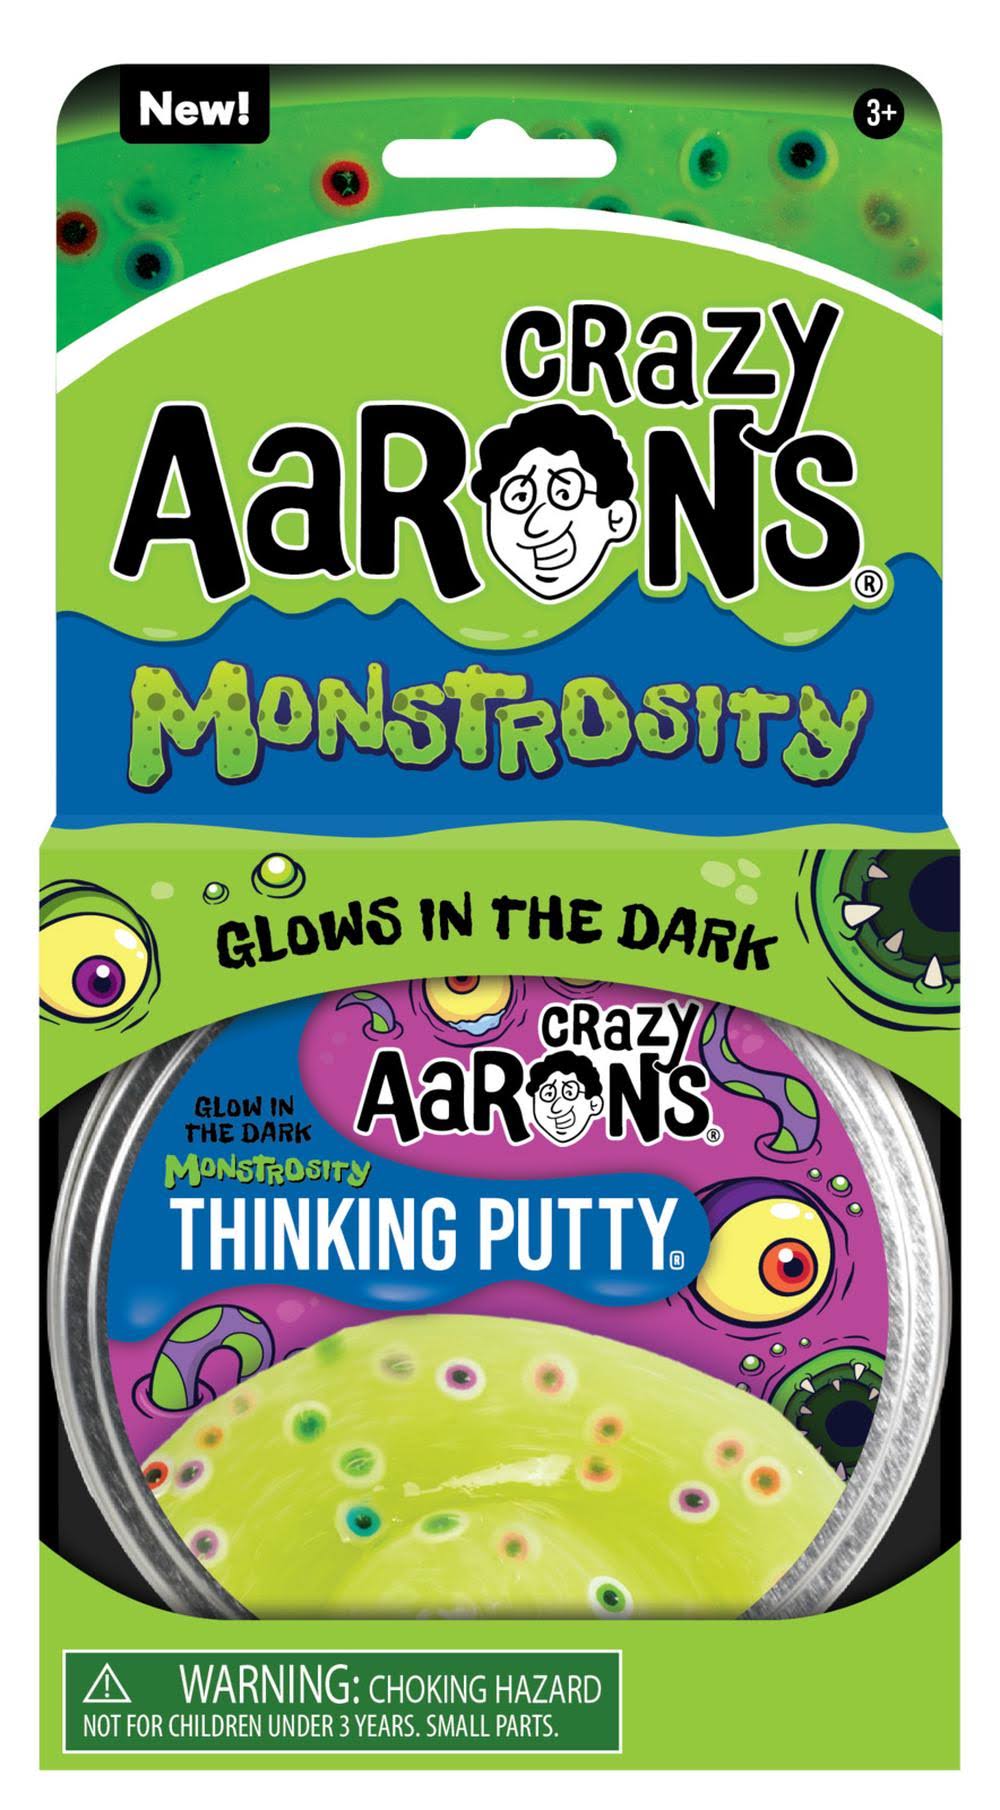 Crazy Aaron's Trendsetters (Monstrosity)